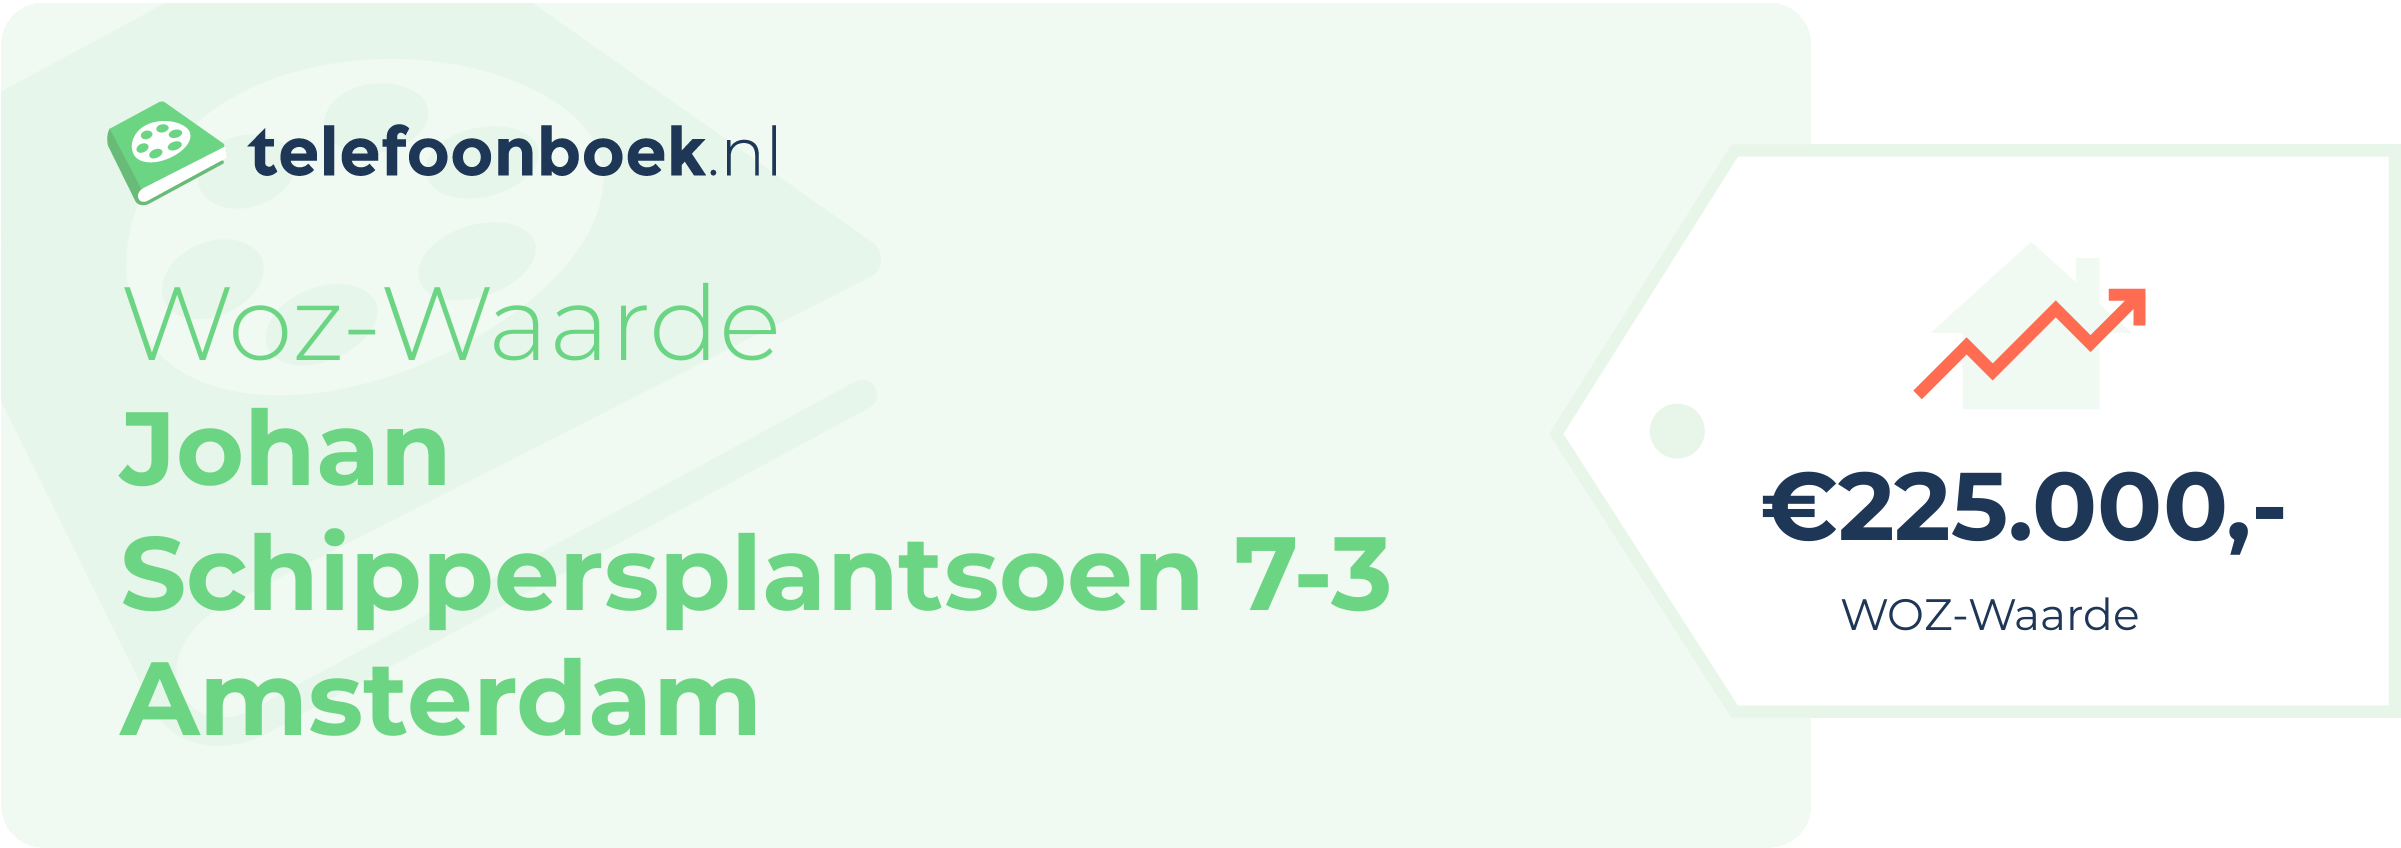 WOZ-waarde Johan Schippersplantsoen 7-3 Amsterdam